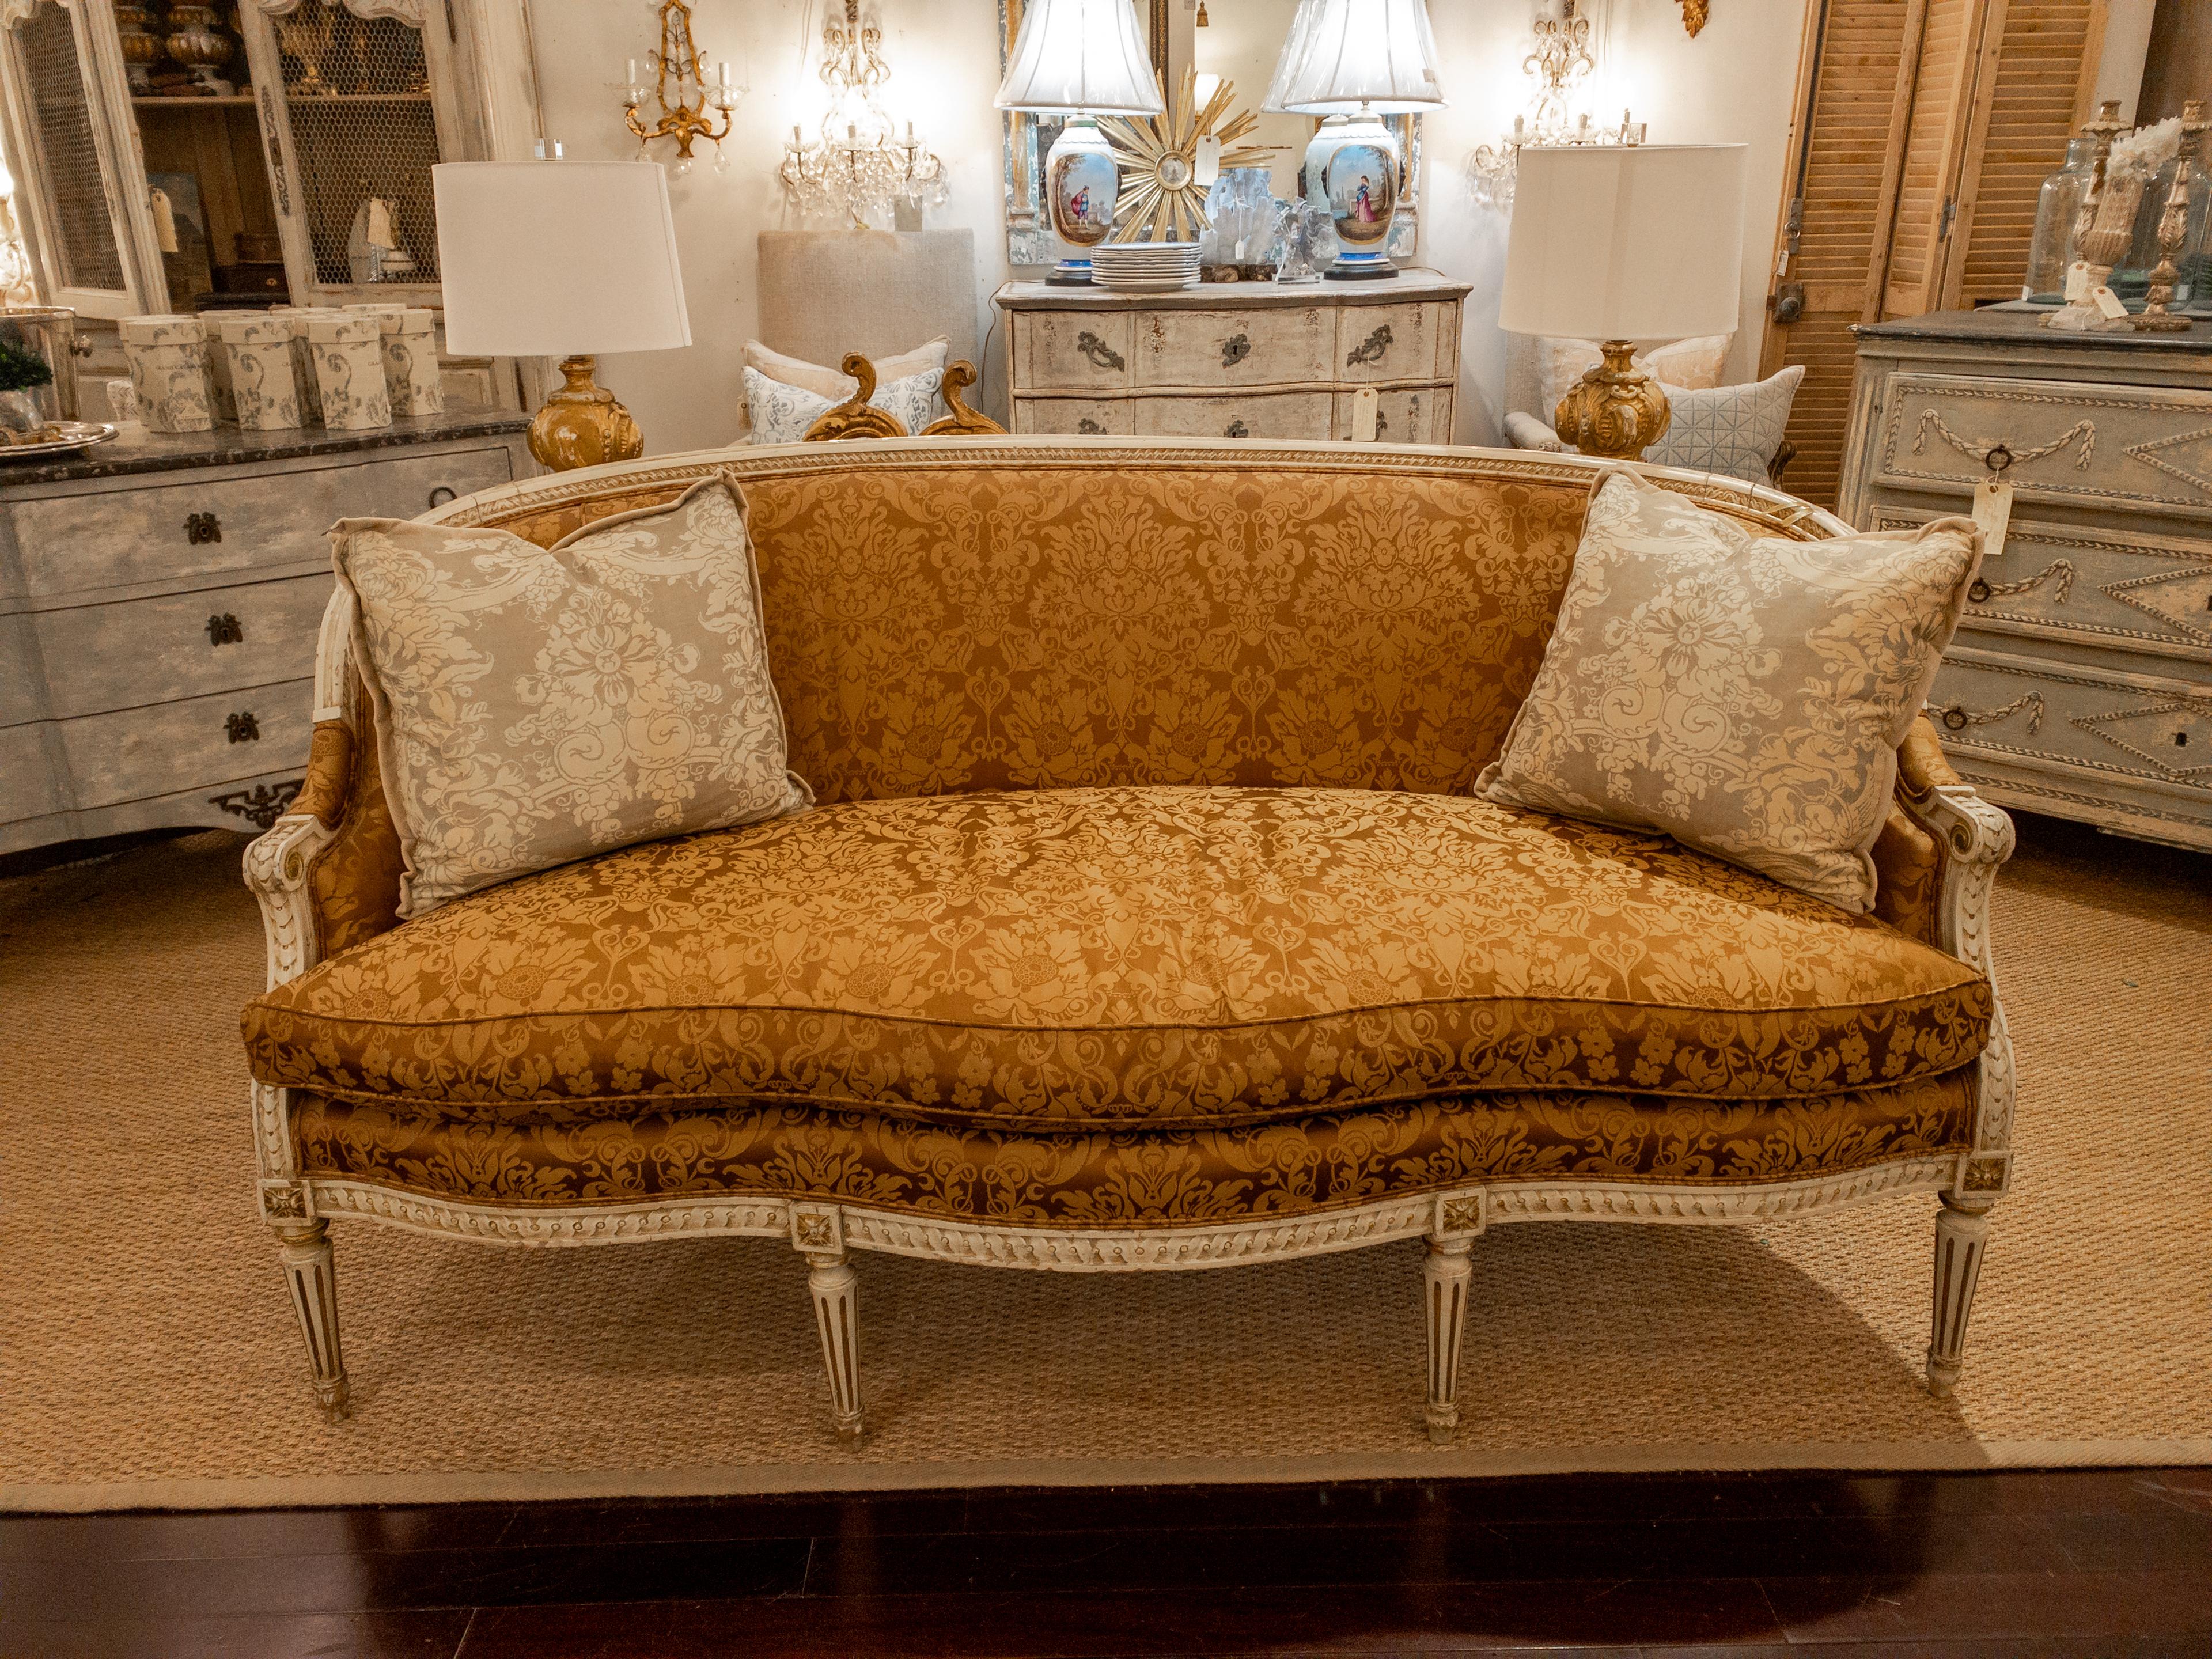 Le canapé peint de style Louis XVI du XIXe siècle est un meuble remarquable qui respire l'élégance et le charme. Sa forme serpentine à l'avant et son dossier arrondi sont des caractéristiques distinctives qui capturent l'essence de l'esthétique du